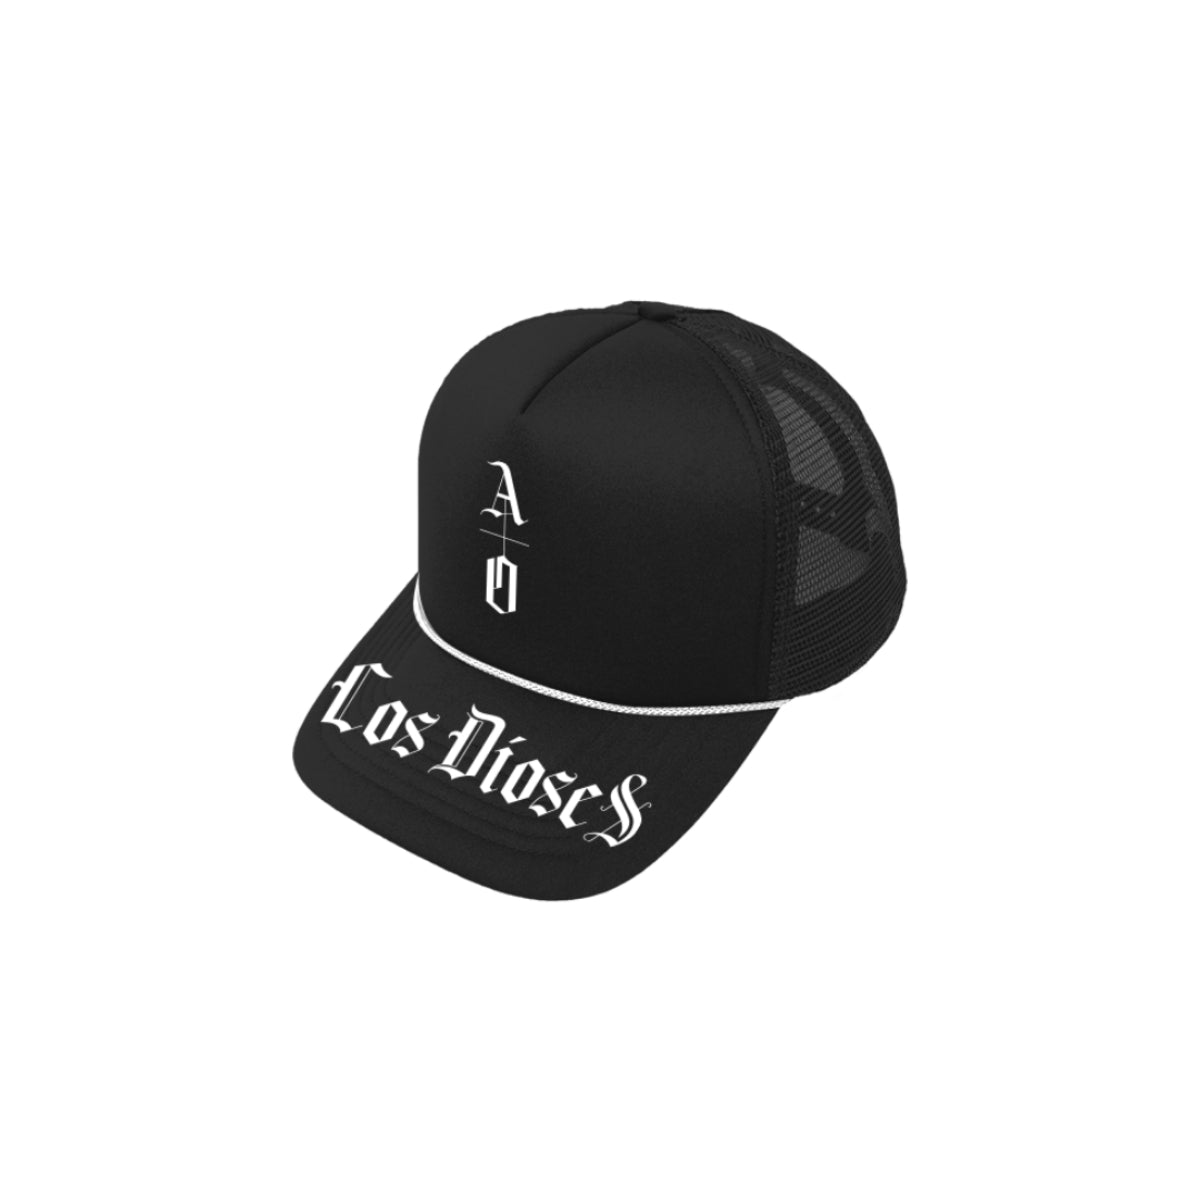 Los Dioses Black Trucker Hat